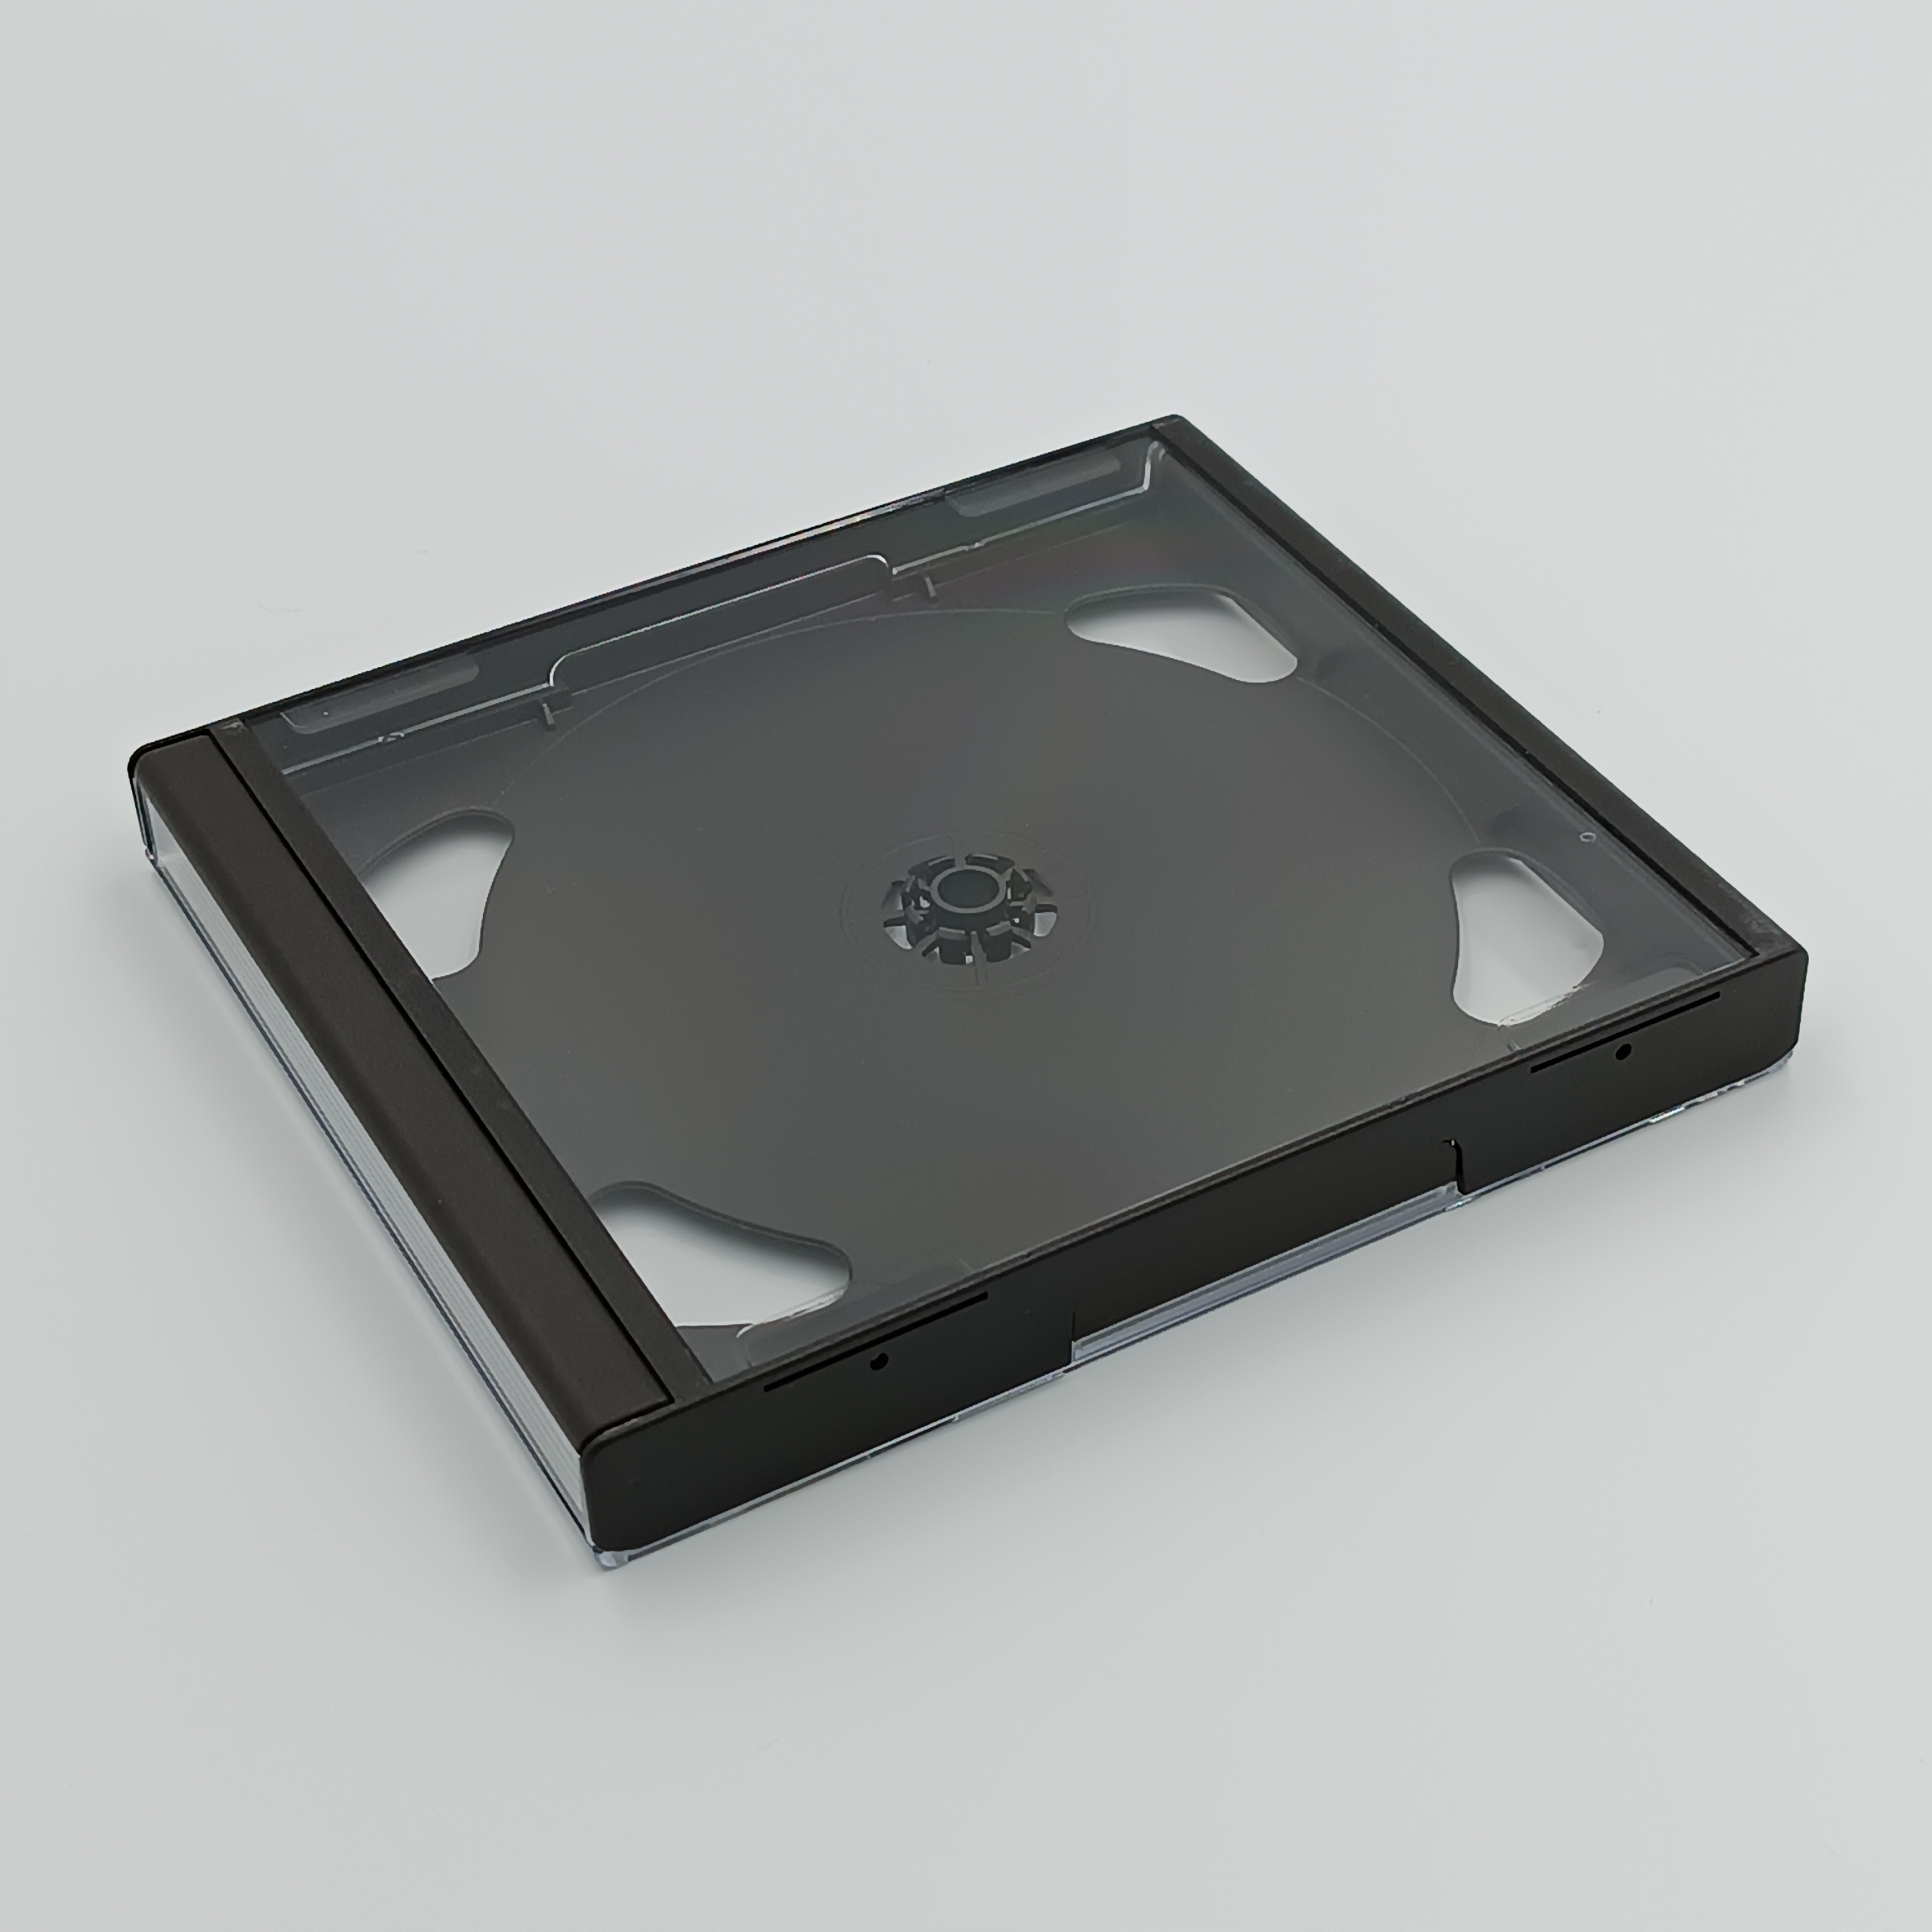 1x Nový box originálny box malé case SONY Playstation PS1/PSX/PSOne